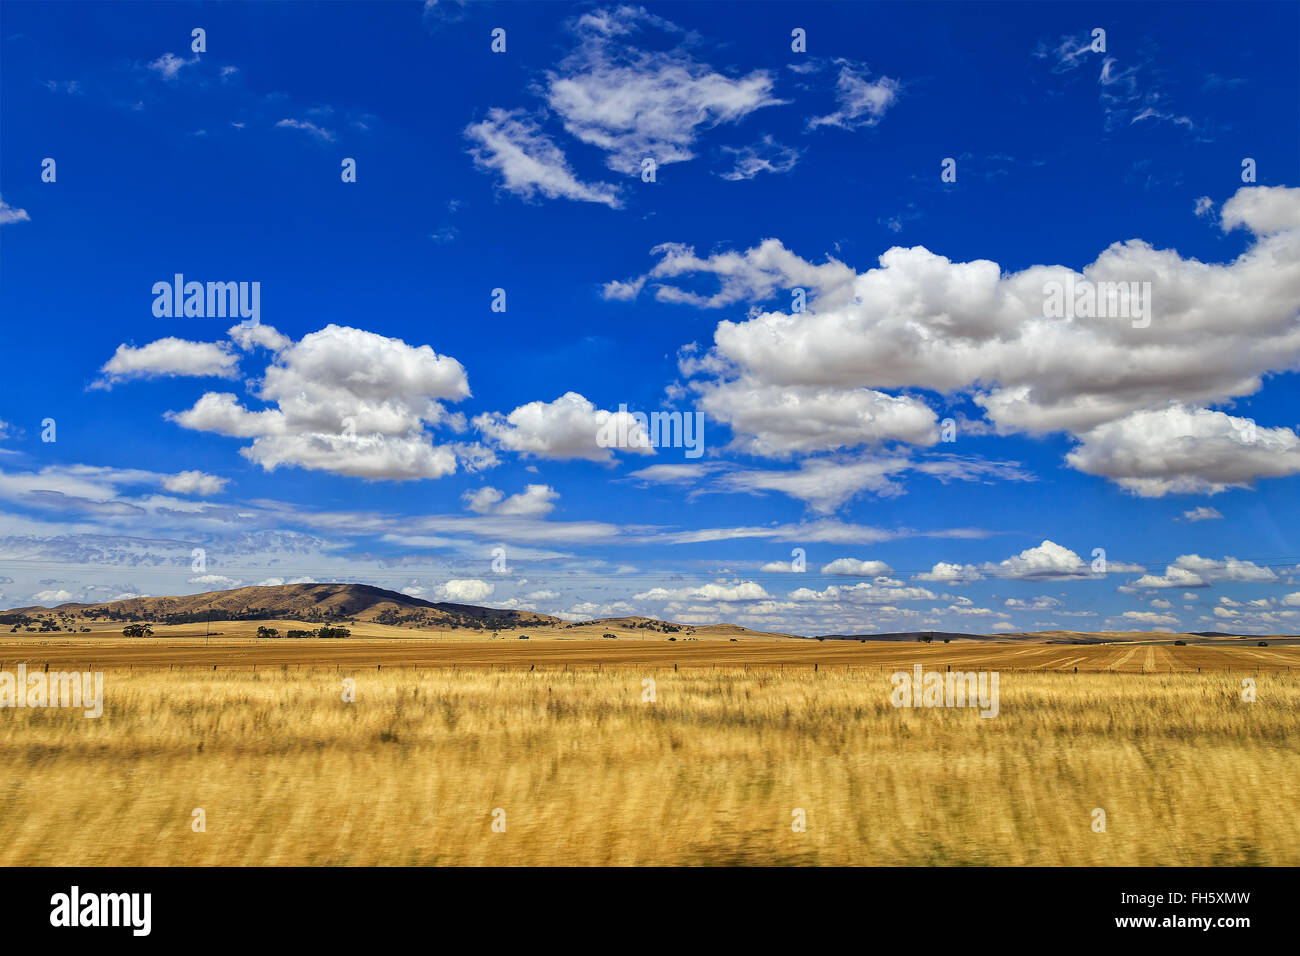 leuchtend gelben Bauernhof Weizenfeld mit fernen Hügel unter blauem Himmel mit weißen Wolken. Agrarsektor von South Australia auf einer Stockfoto